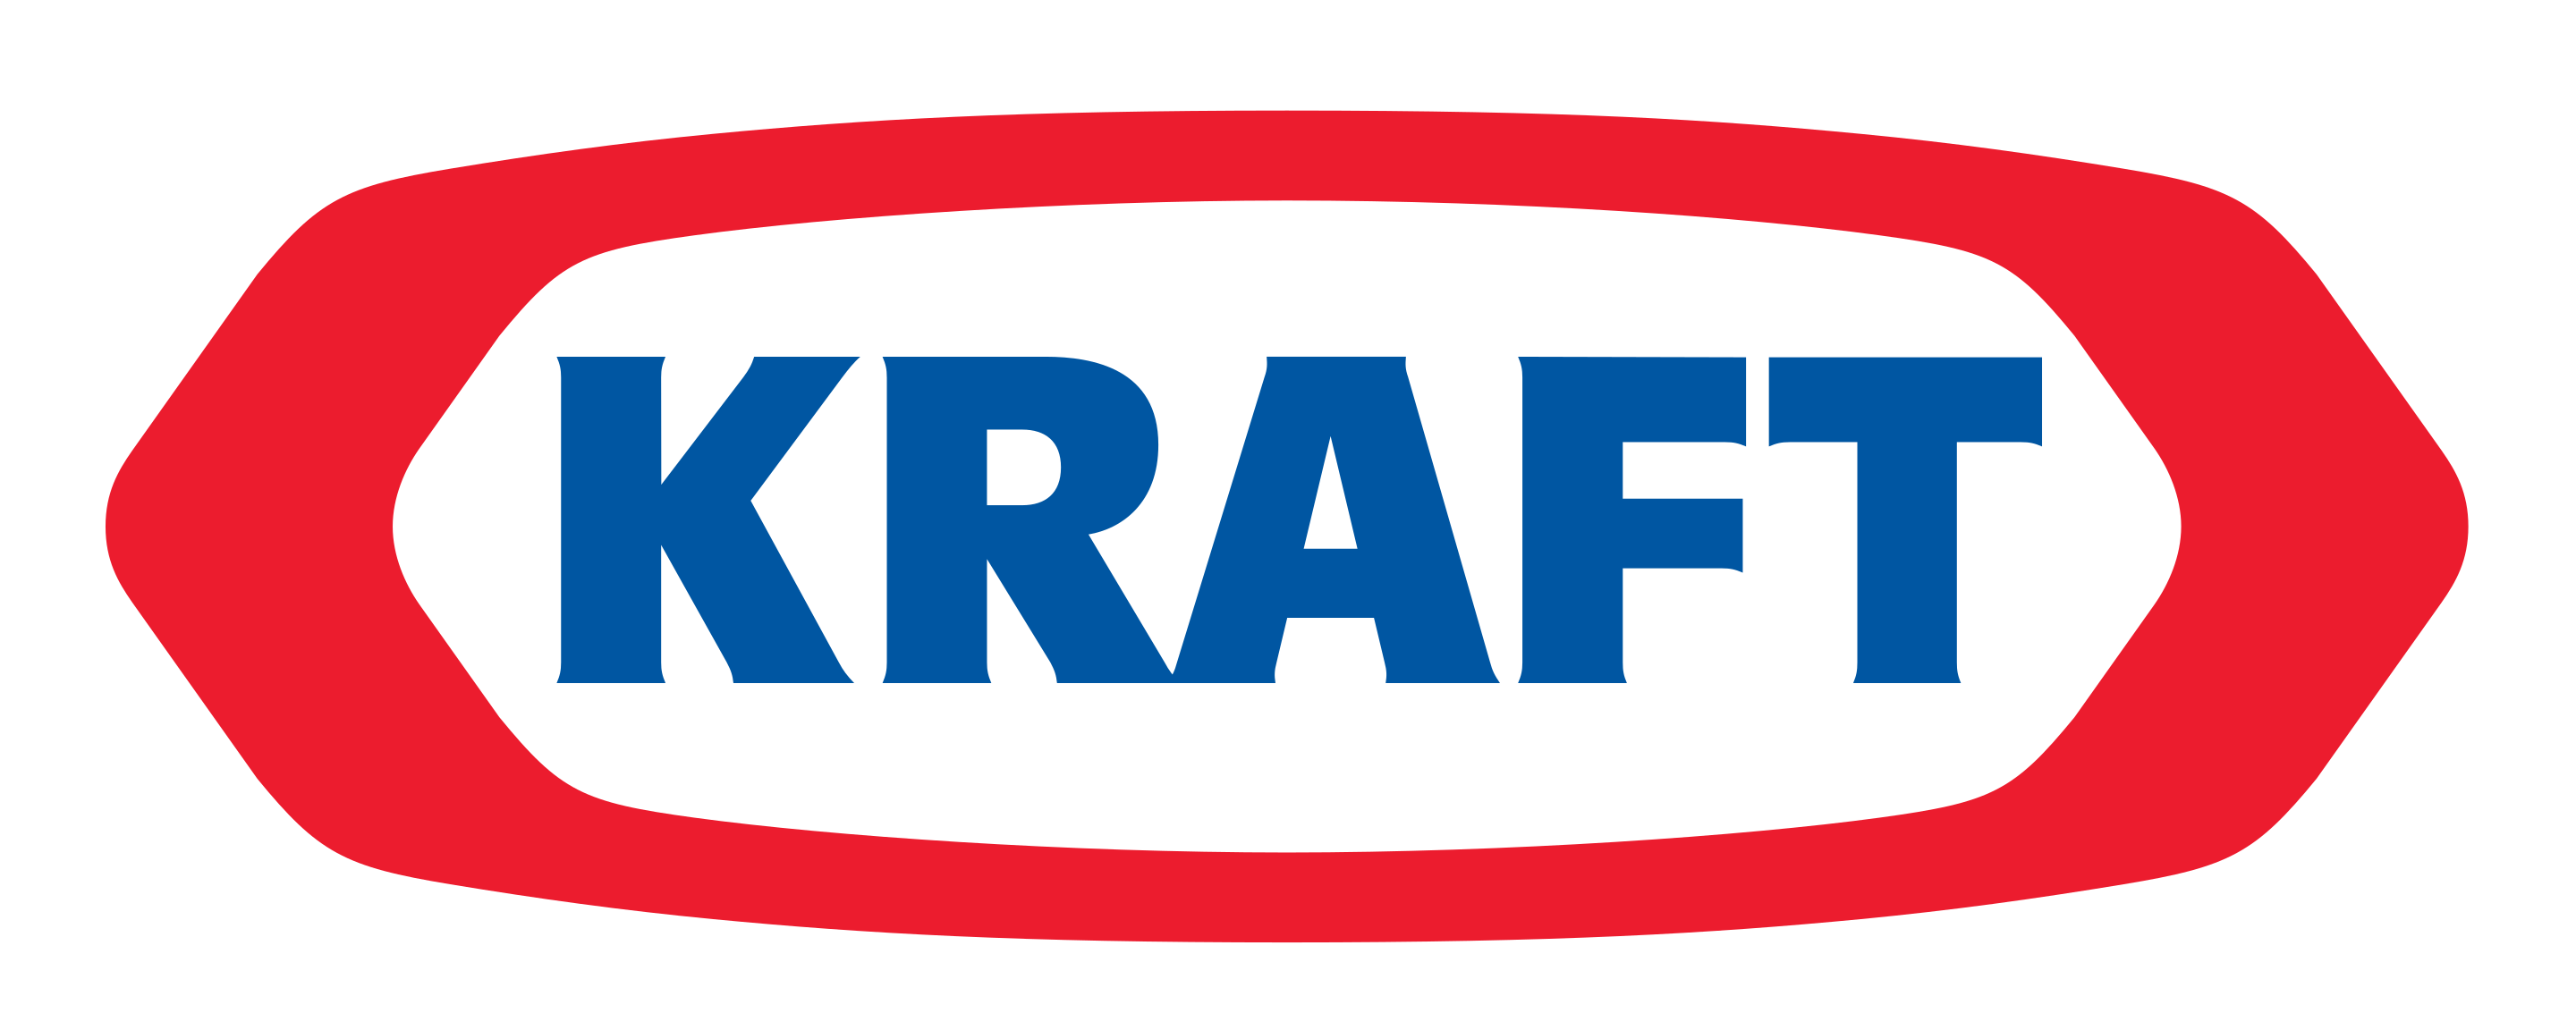 old Kraft logo